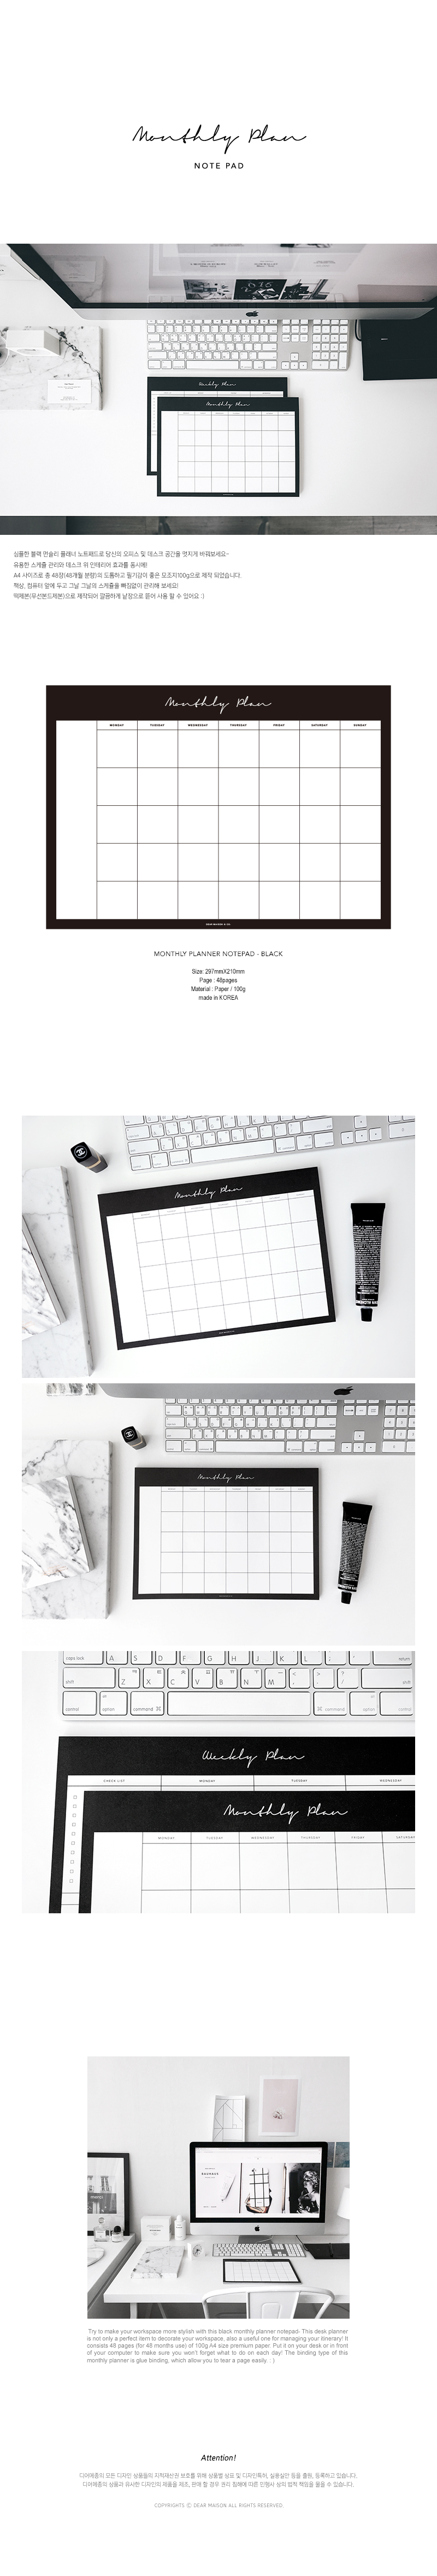 Monthly Planner Notepad - Black 8,000원 - 디어메종 디자인문구, 노트/메모, 메모지, 메모패드 바보사랑 Monthly Planner Notepad - Black 8,000원 - 디어메종 디자인문구, 노트/메모, 메모지, 메모패드 바보사랑